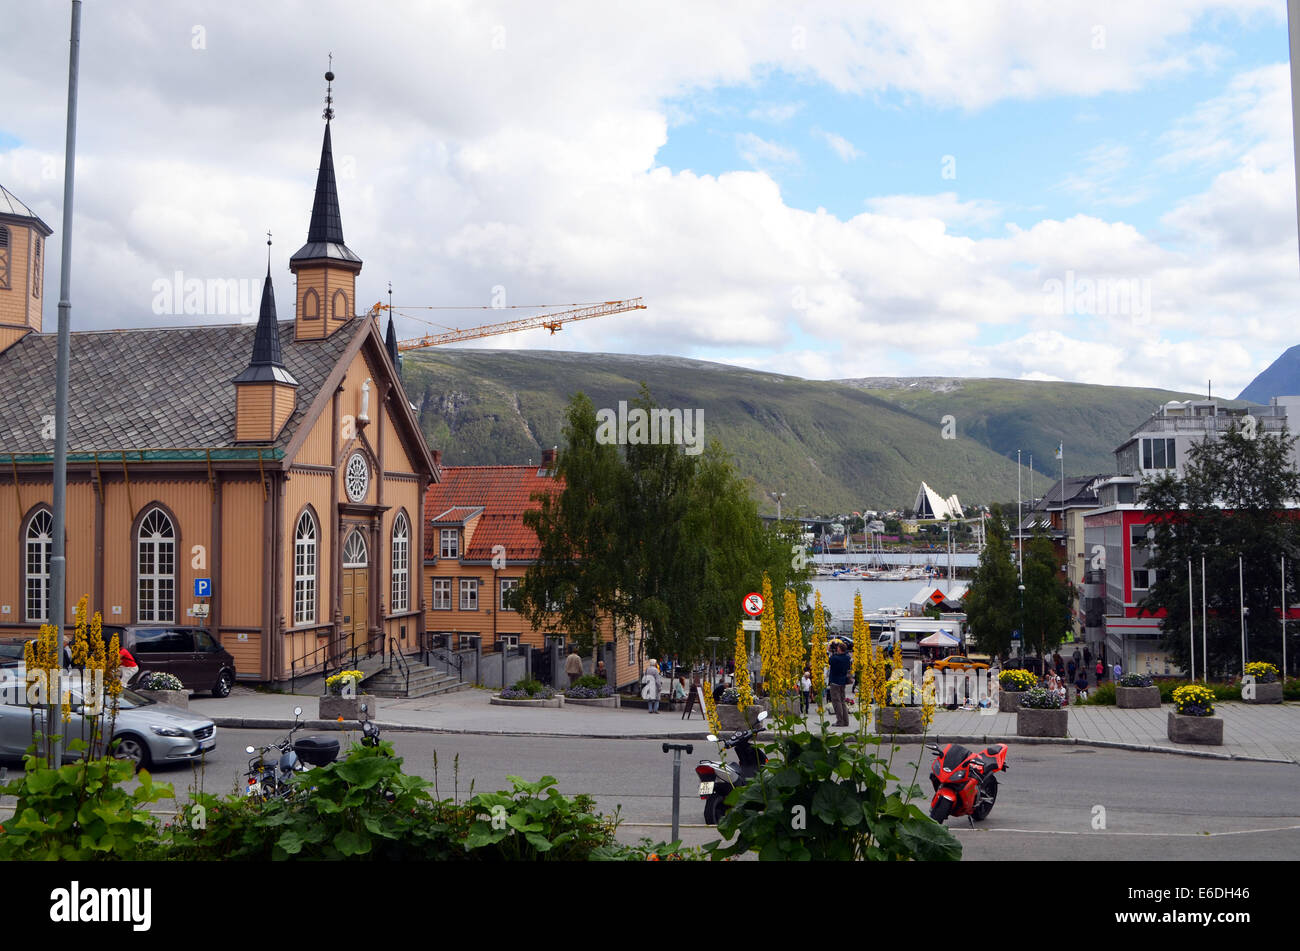 Le centre-ville de Tromso,personnes shopping.ville populaire pour RoaldAmundsen, étant plus au nord , ArcticCathedral,festivals modernes Banque D'Images